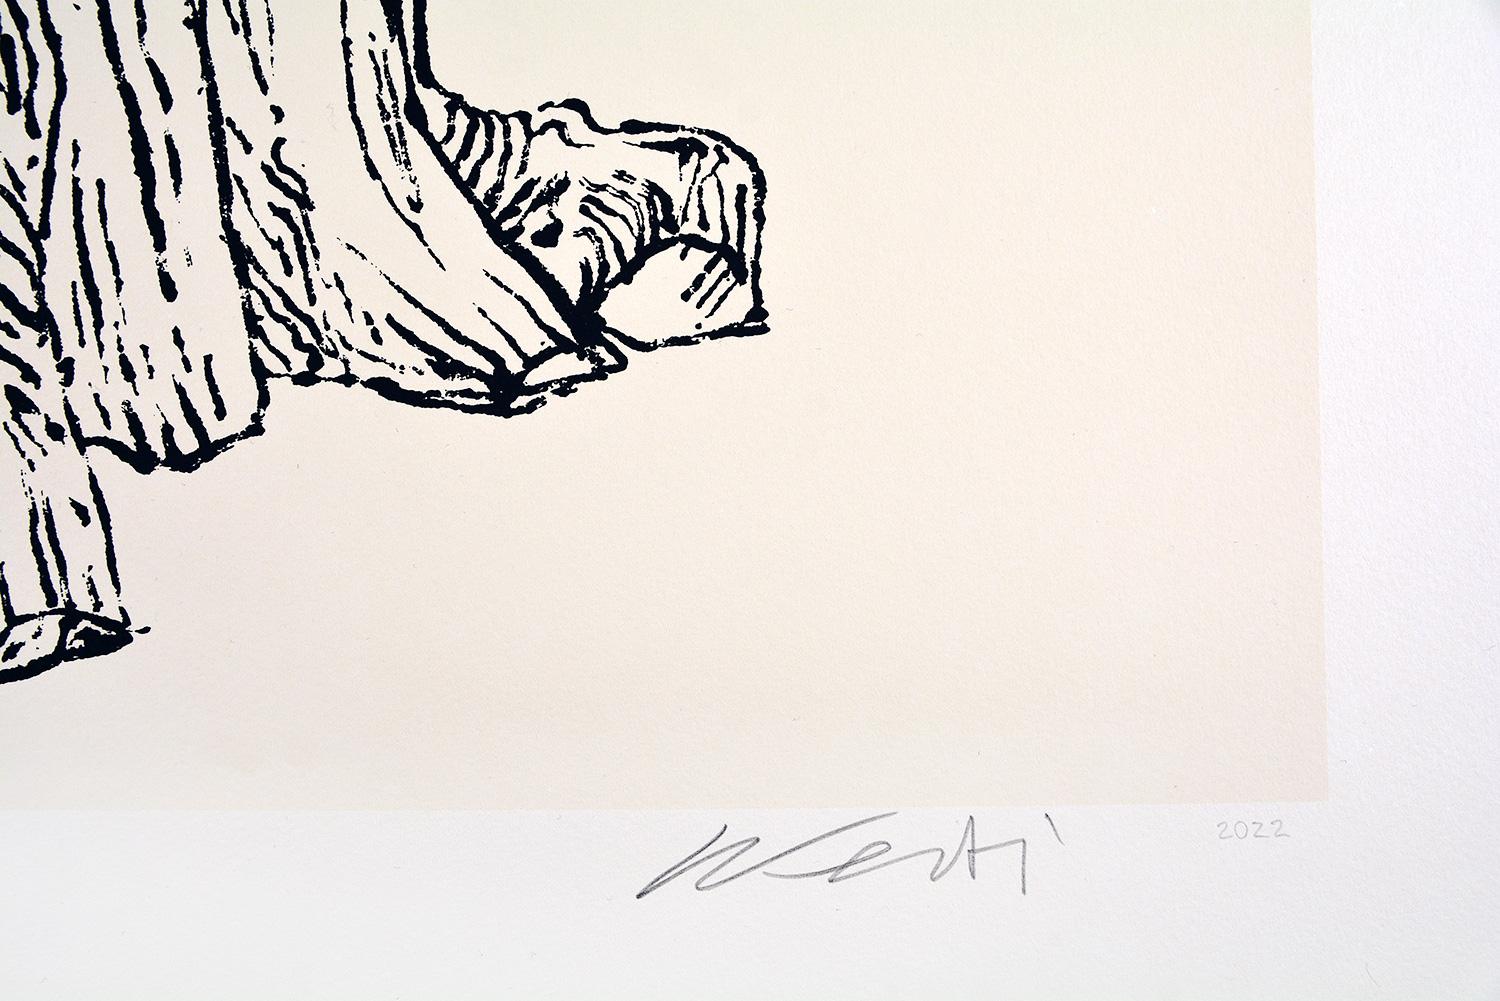 Ai Weiwei CEDAR (GROSS)

Datum der Gründung: 2022
Medium: Siebdruck auf Somerset Velvet Antique Papier
Auflage: 50
Größe: 70,5 x 55,5 cm
Zustand: In neuwertigem Zustand, brandneu und nie gerahmt
Siebdruck auf Somerset Velvet Antique 280gsm Papier,